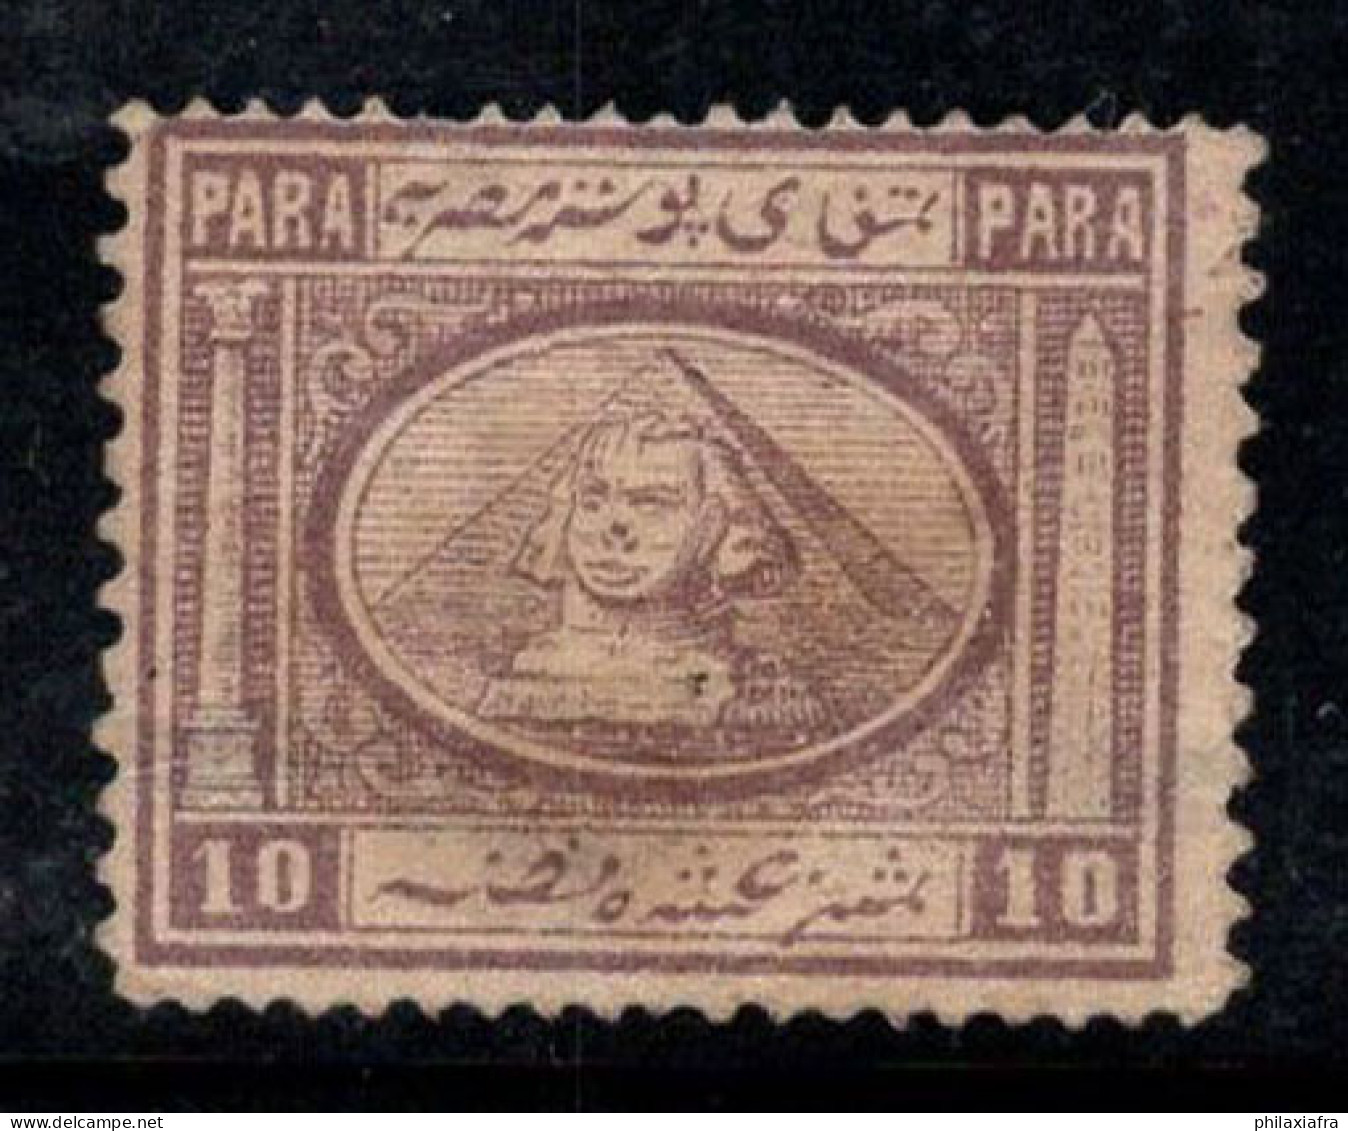 Égypte 1867 Mi. 9 Sans Gomme 20% Sphinx, Pyramide De Khéphren 10 Pa - 1866-1914 Ägypten Khediva